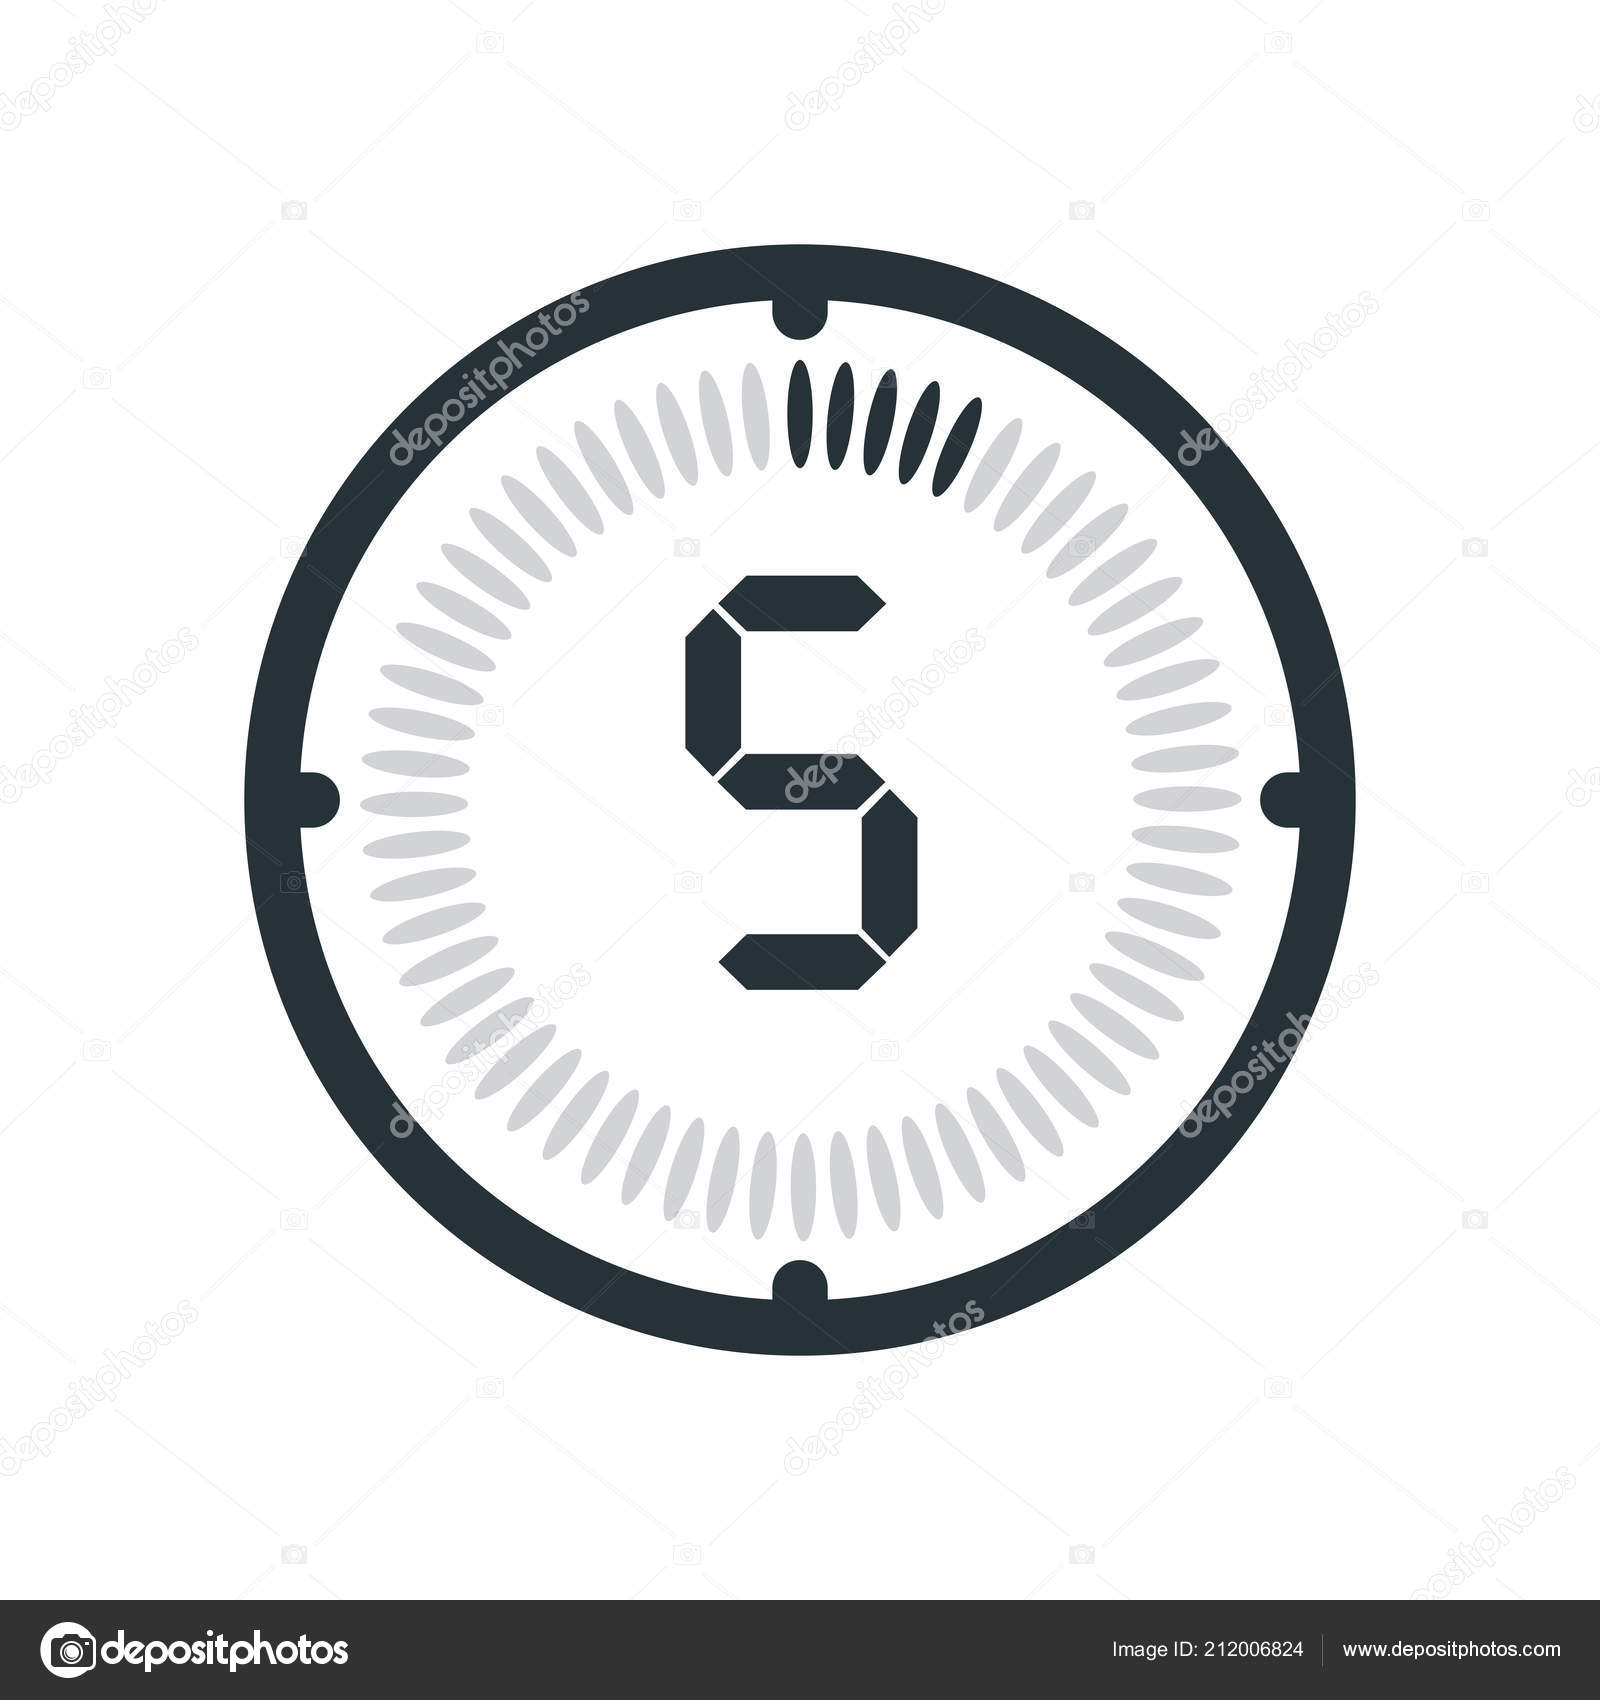 Hãy thưởng thức sự tối giản của icon 5 phút trên nền trắng. Sản phẩm được thiết kế đơn giản và dễ sử dụng, giúp bạn quản lý thời gian hiệu quả. Nhấn vào hình ảnh để xem thêm chi tiết.